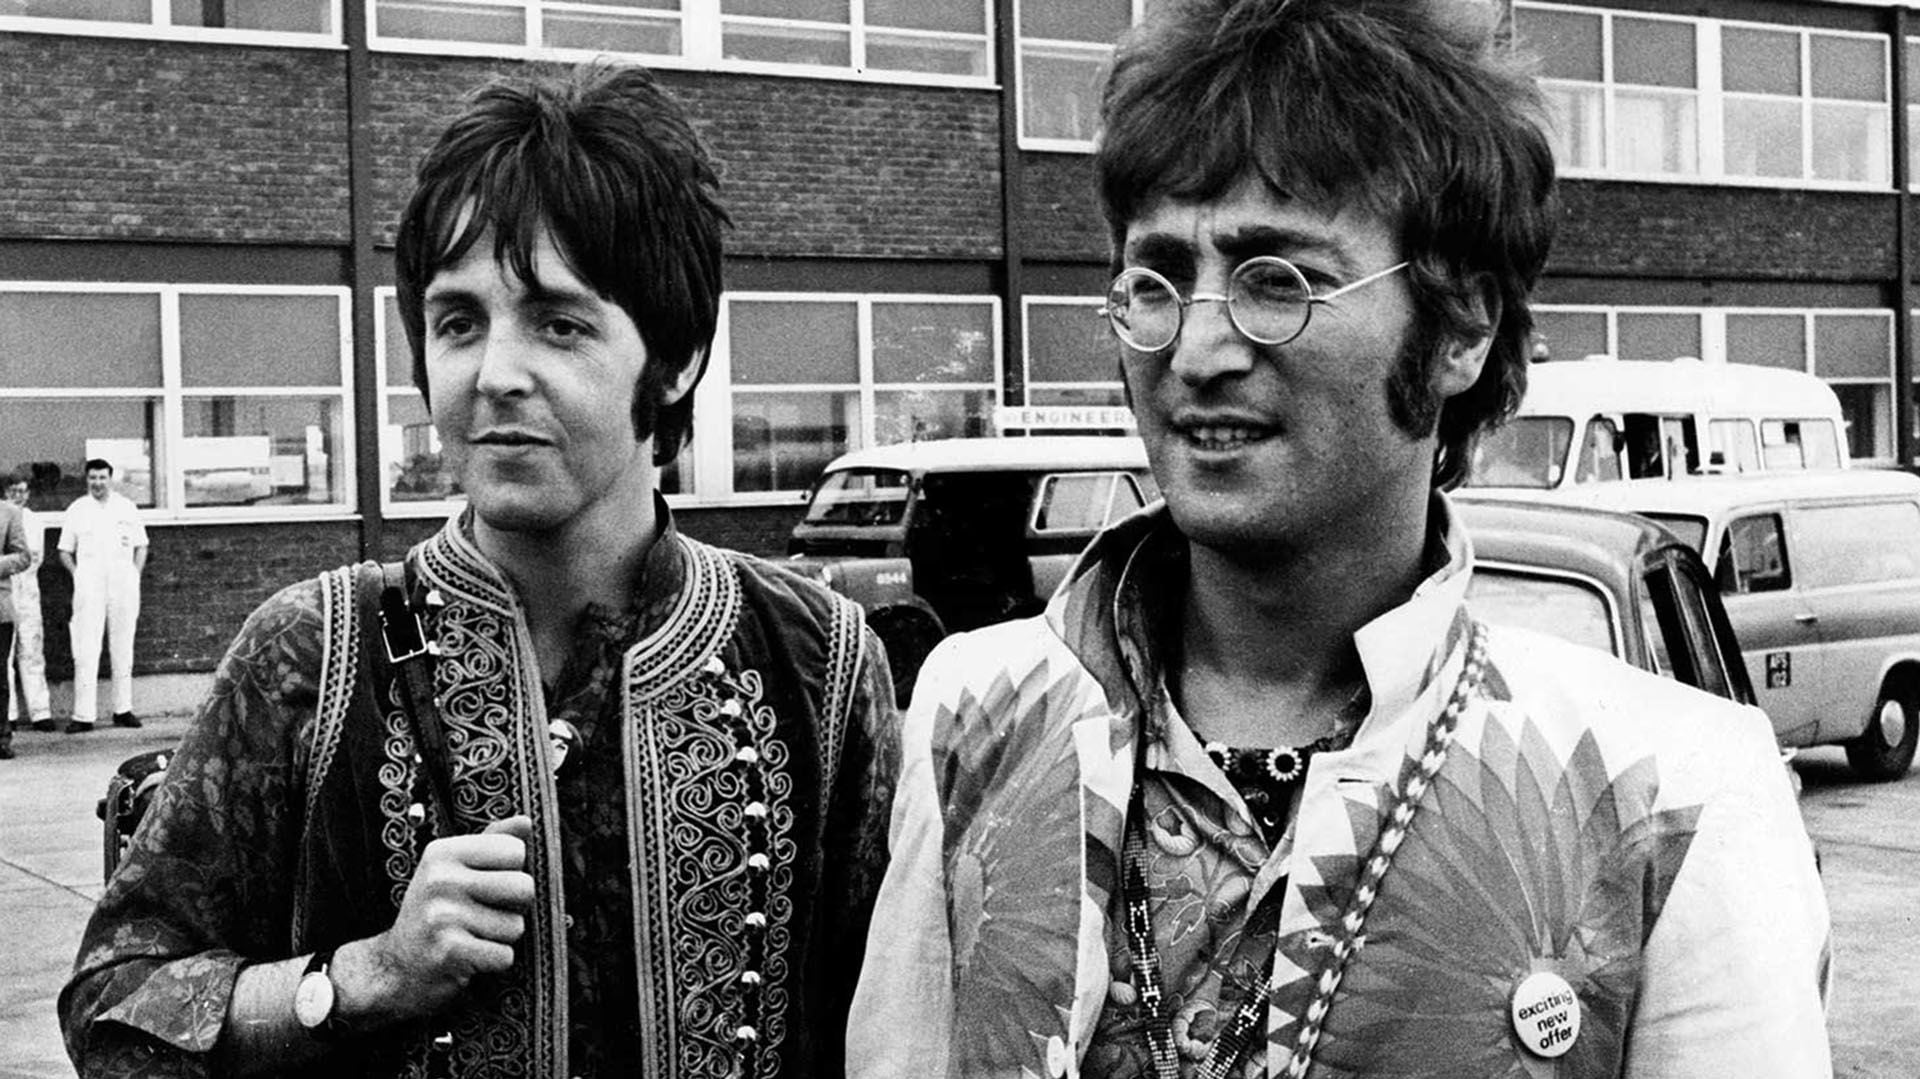 John Lennon creía que "Hey Jude" había sido escrita para él 